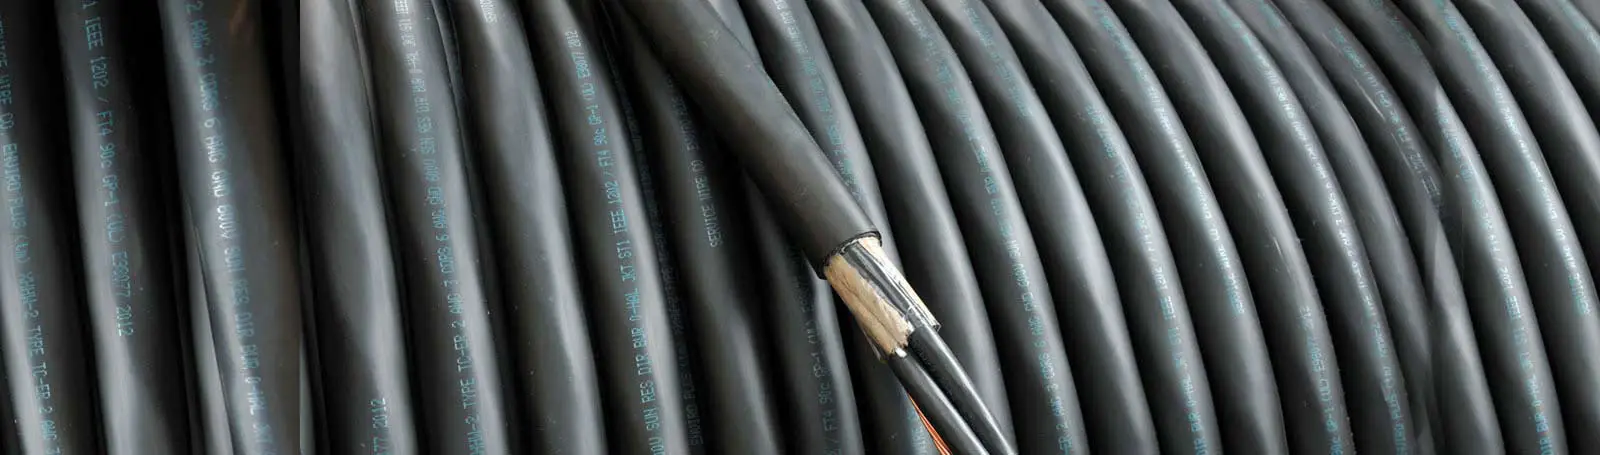 Service Wire XHHW-2 Tray Cable Black